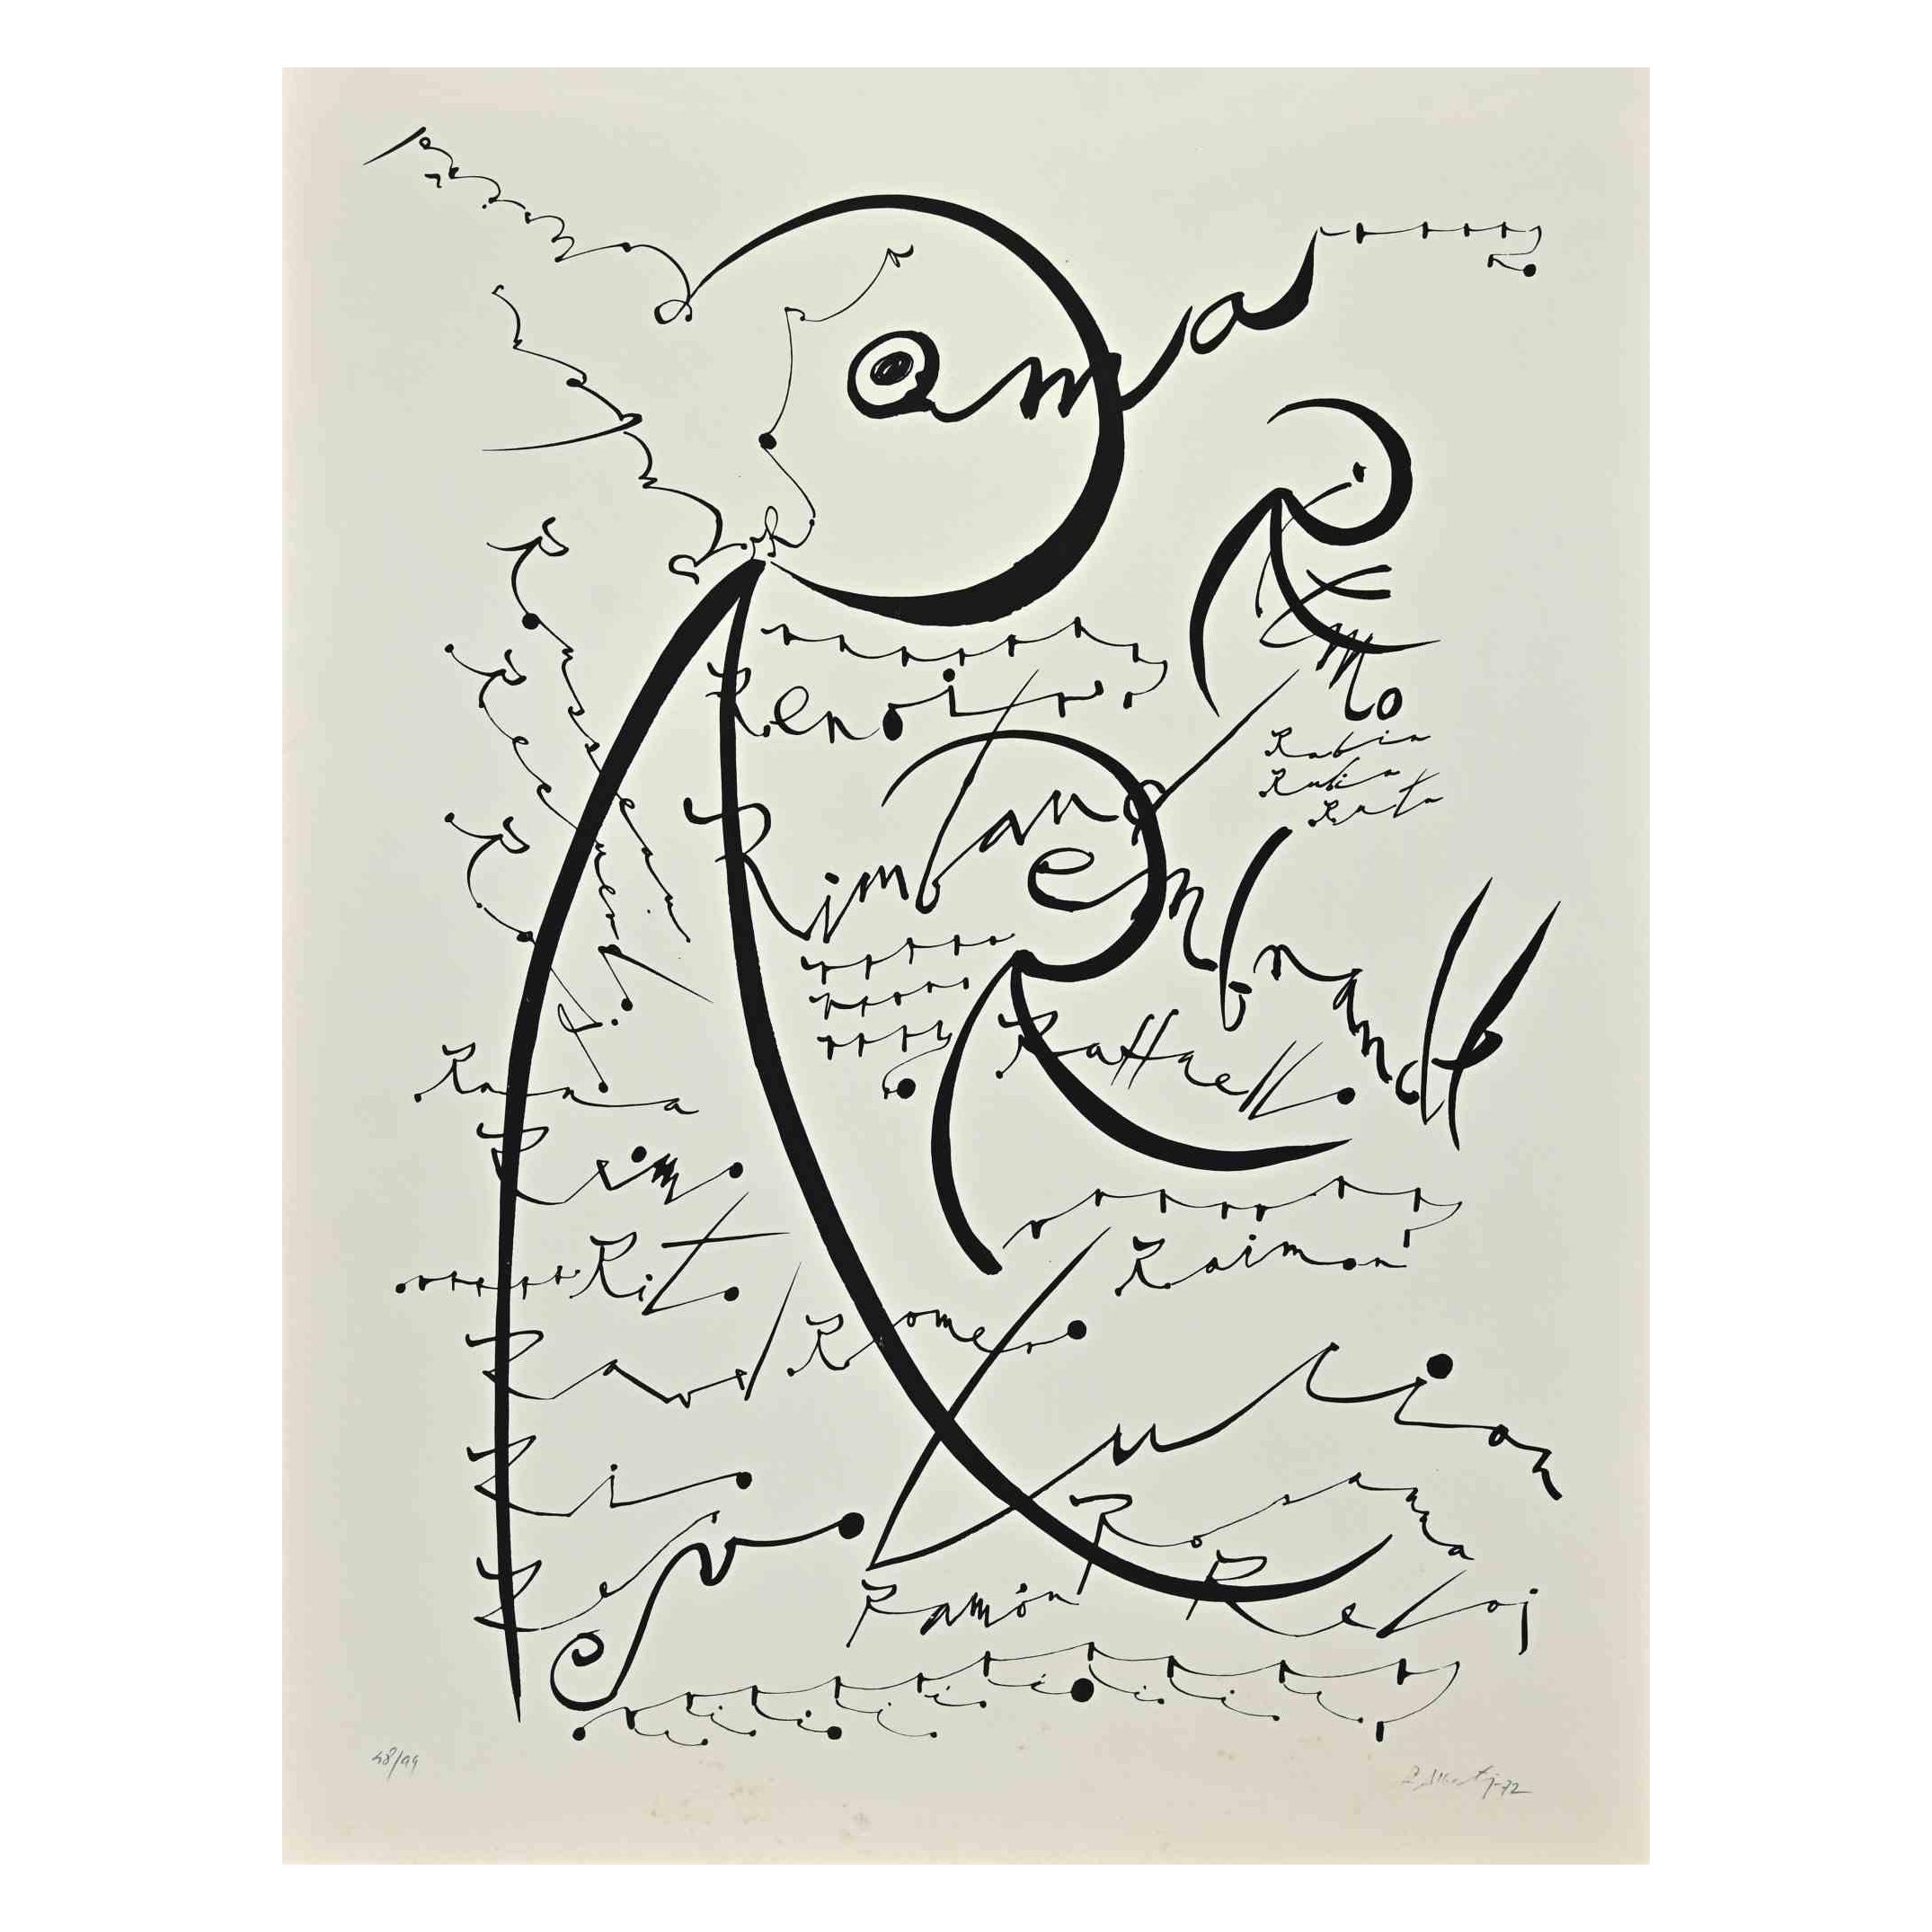 Letter R - Original Lithograph by Rafael Alberti - 1972